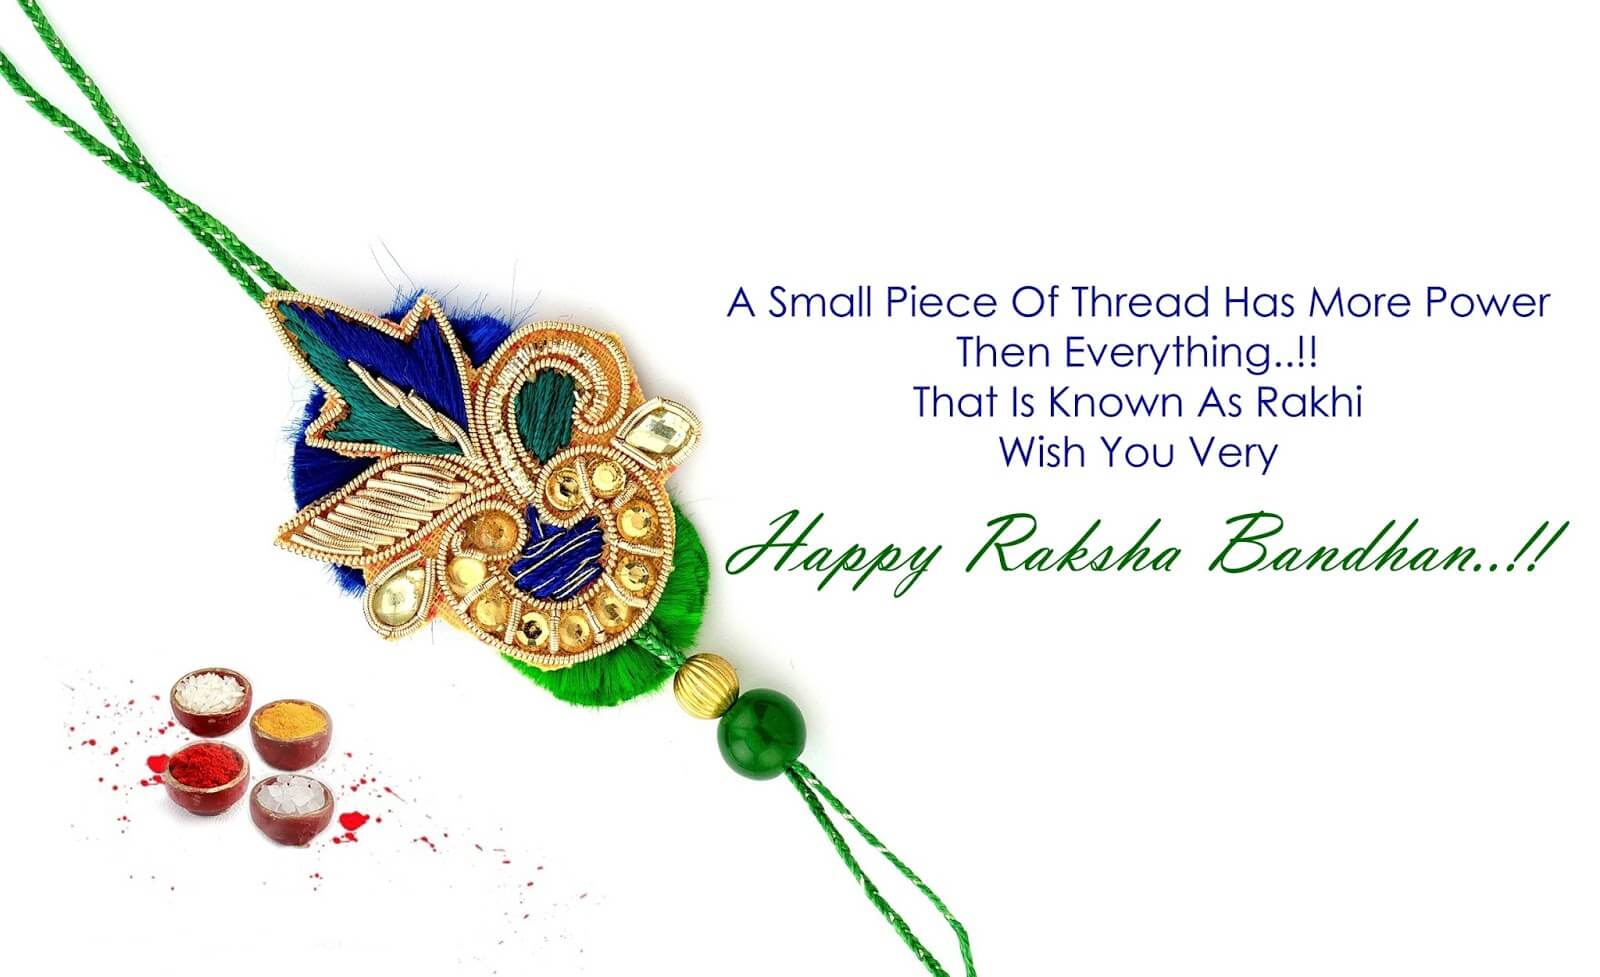 Happy Raksha Bandhan images quotes in english